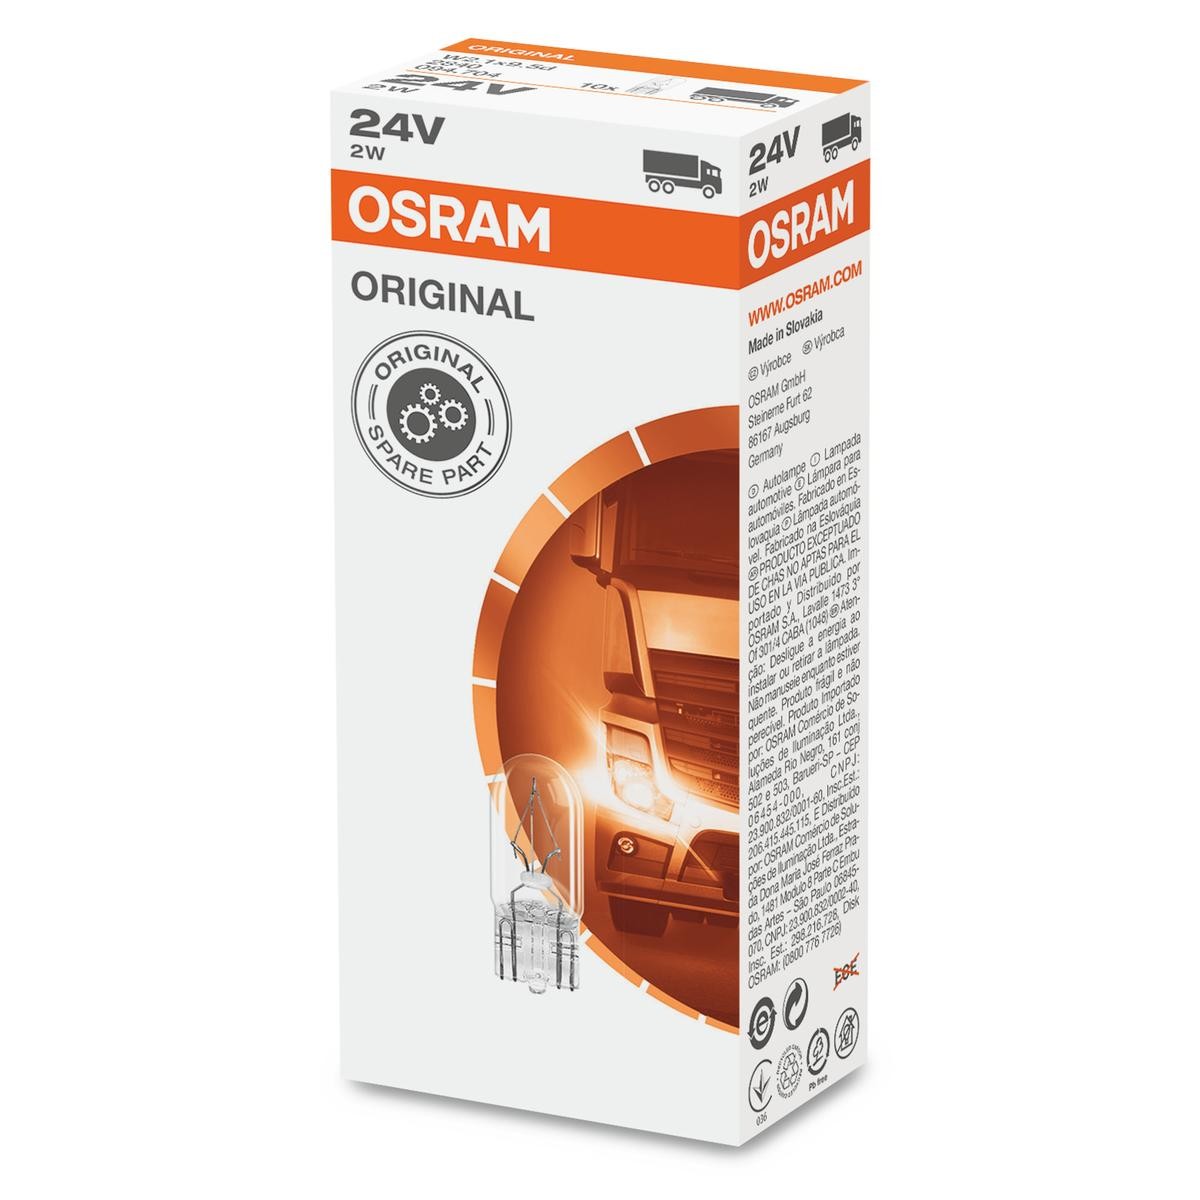 OSRAM ORIGINAL LINE 2840 Bulb, interior light Socket Bulb, 24V, 2W